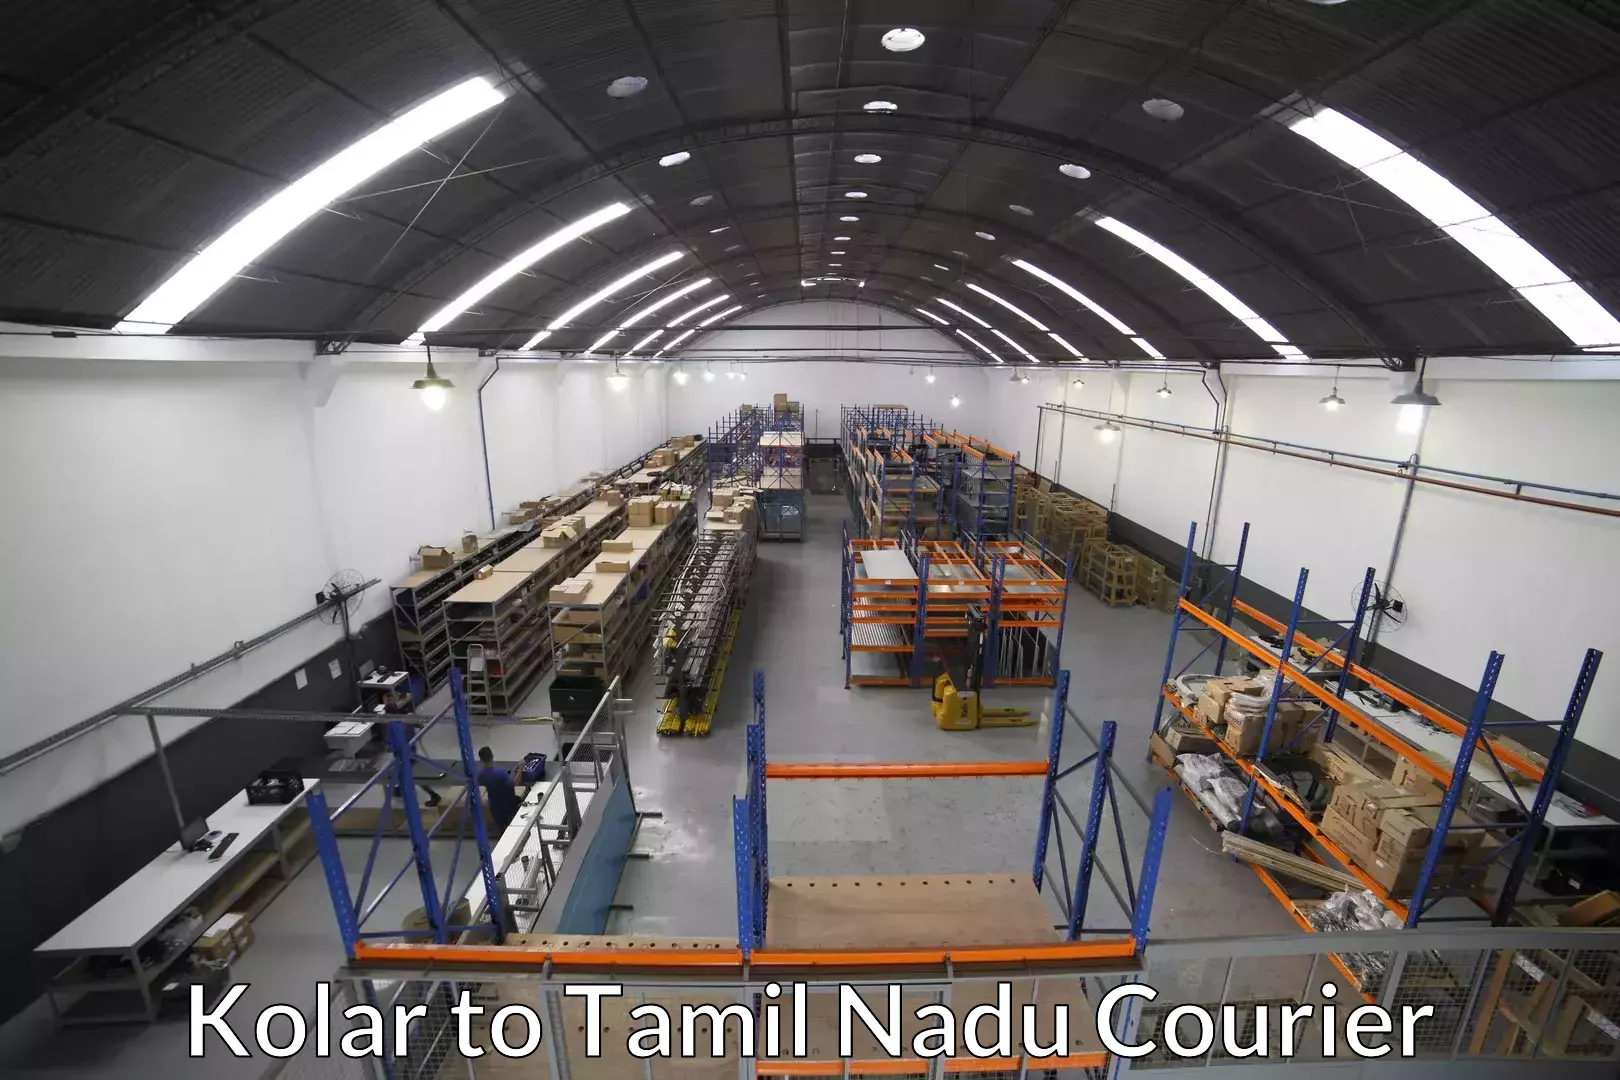 Furniture transport specialists in Kolar to Tamil Nadu